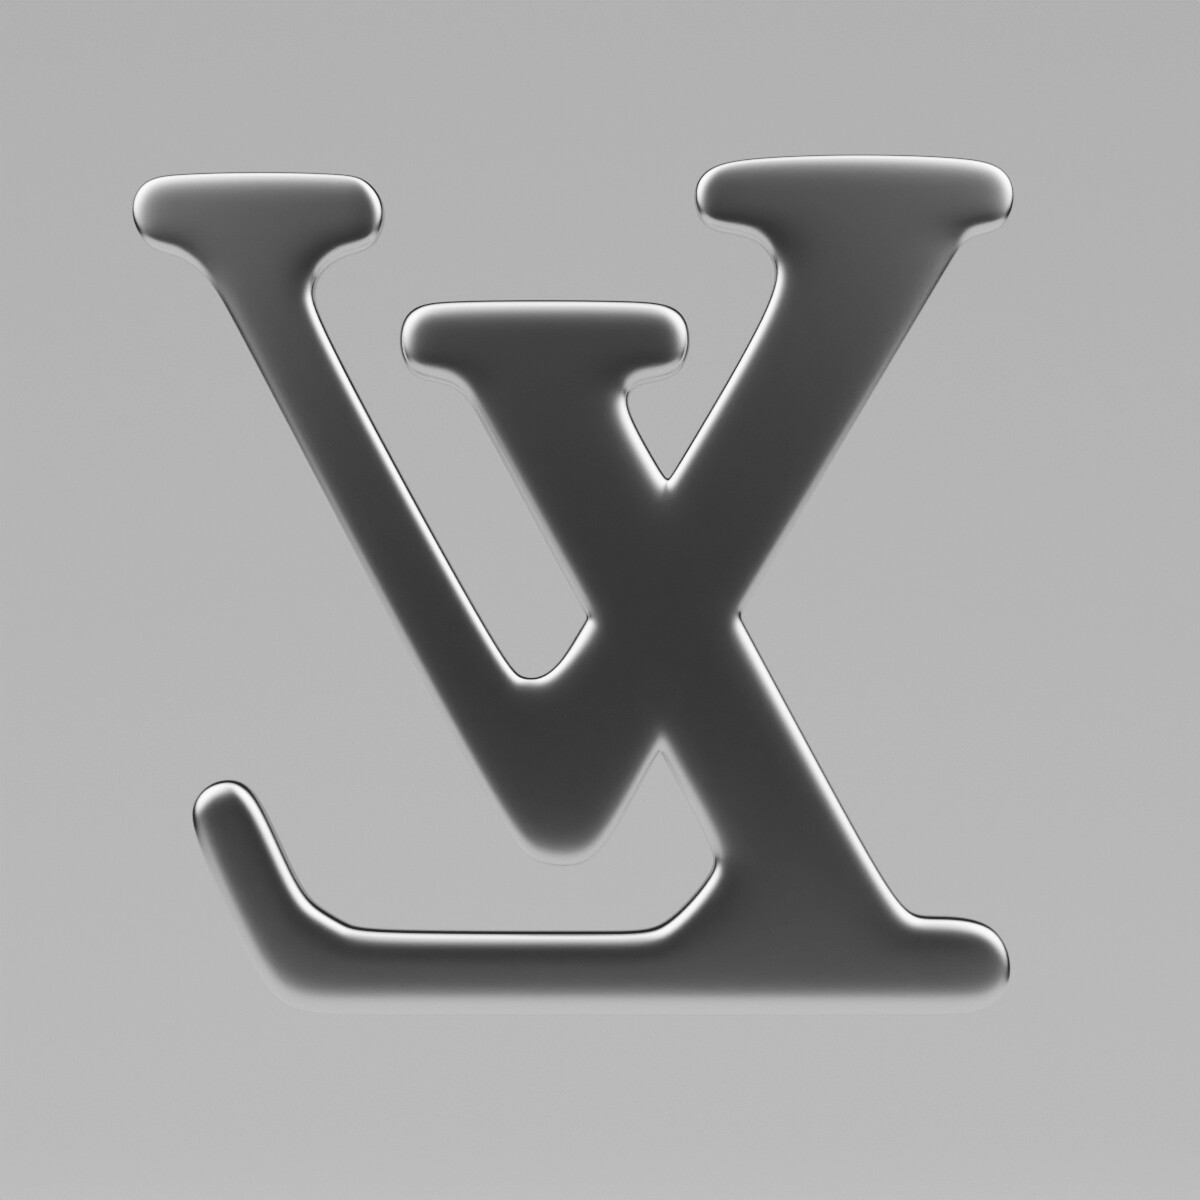 Louis Vuitton logo replica | 3D Print Model